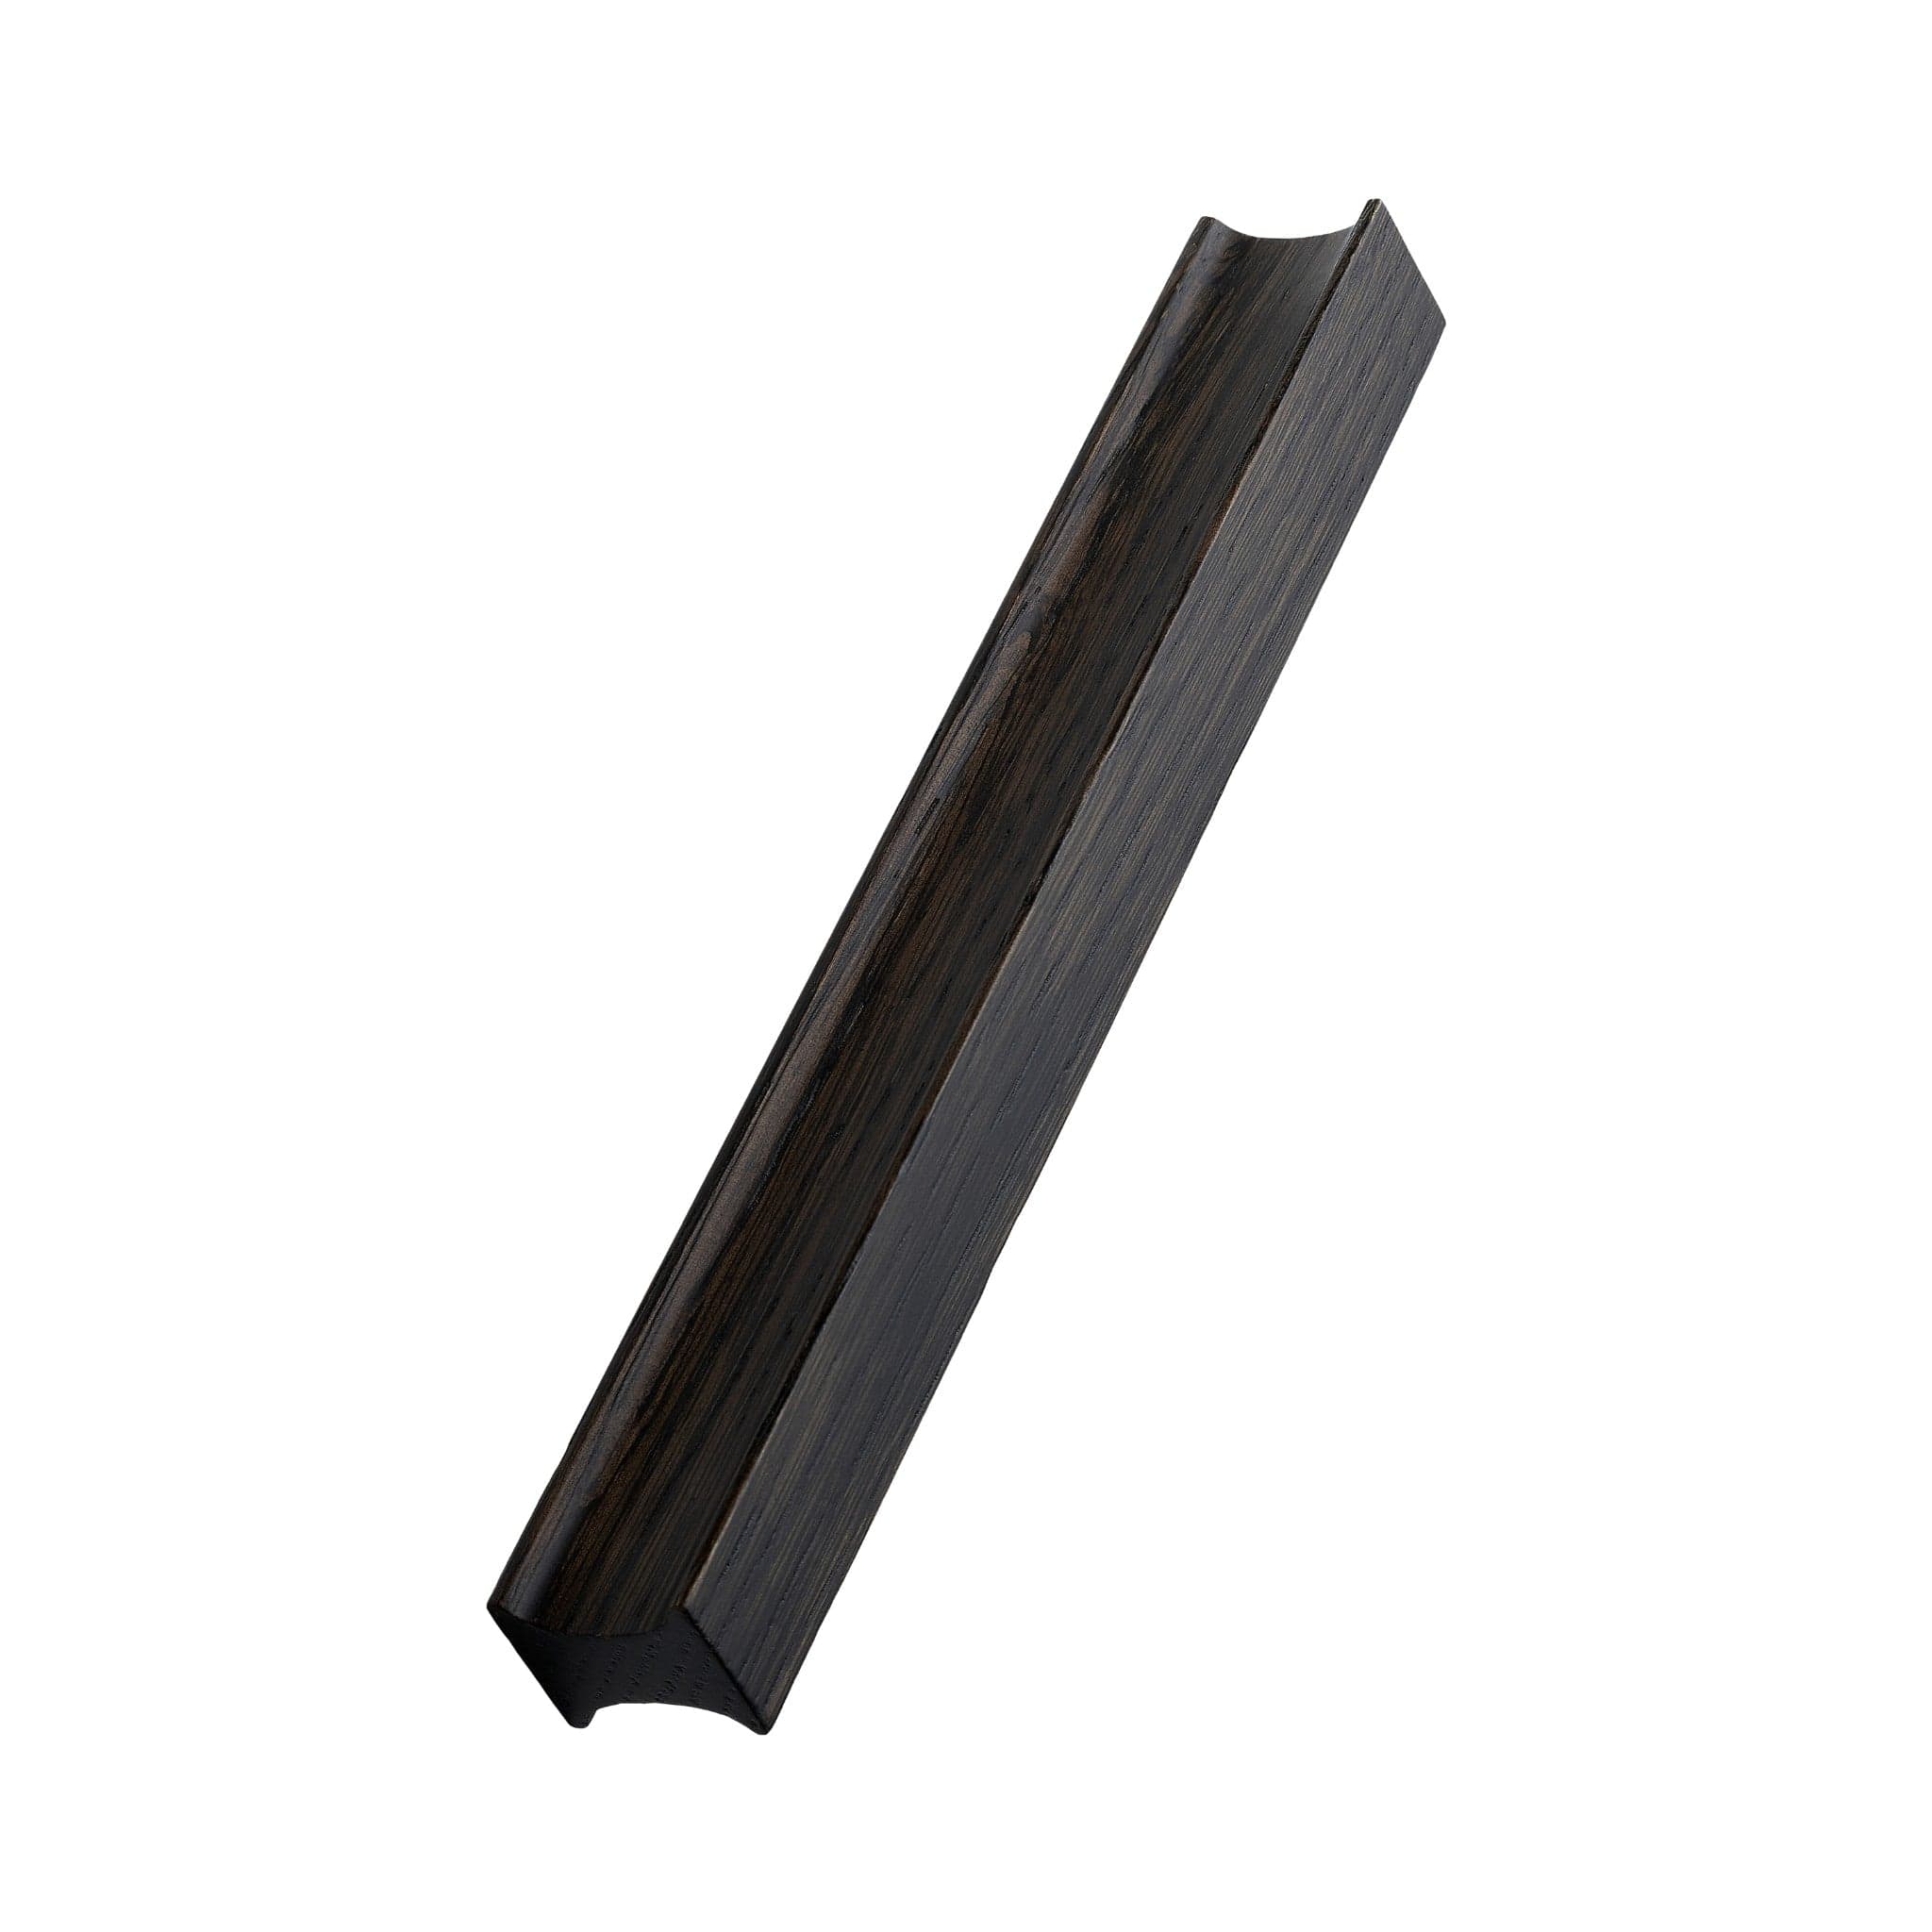 Track | Greb i Mørkebrun Eg L 200 mm (C/C 160 mm) Furnipart FP-103720160-056 FINICC